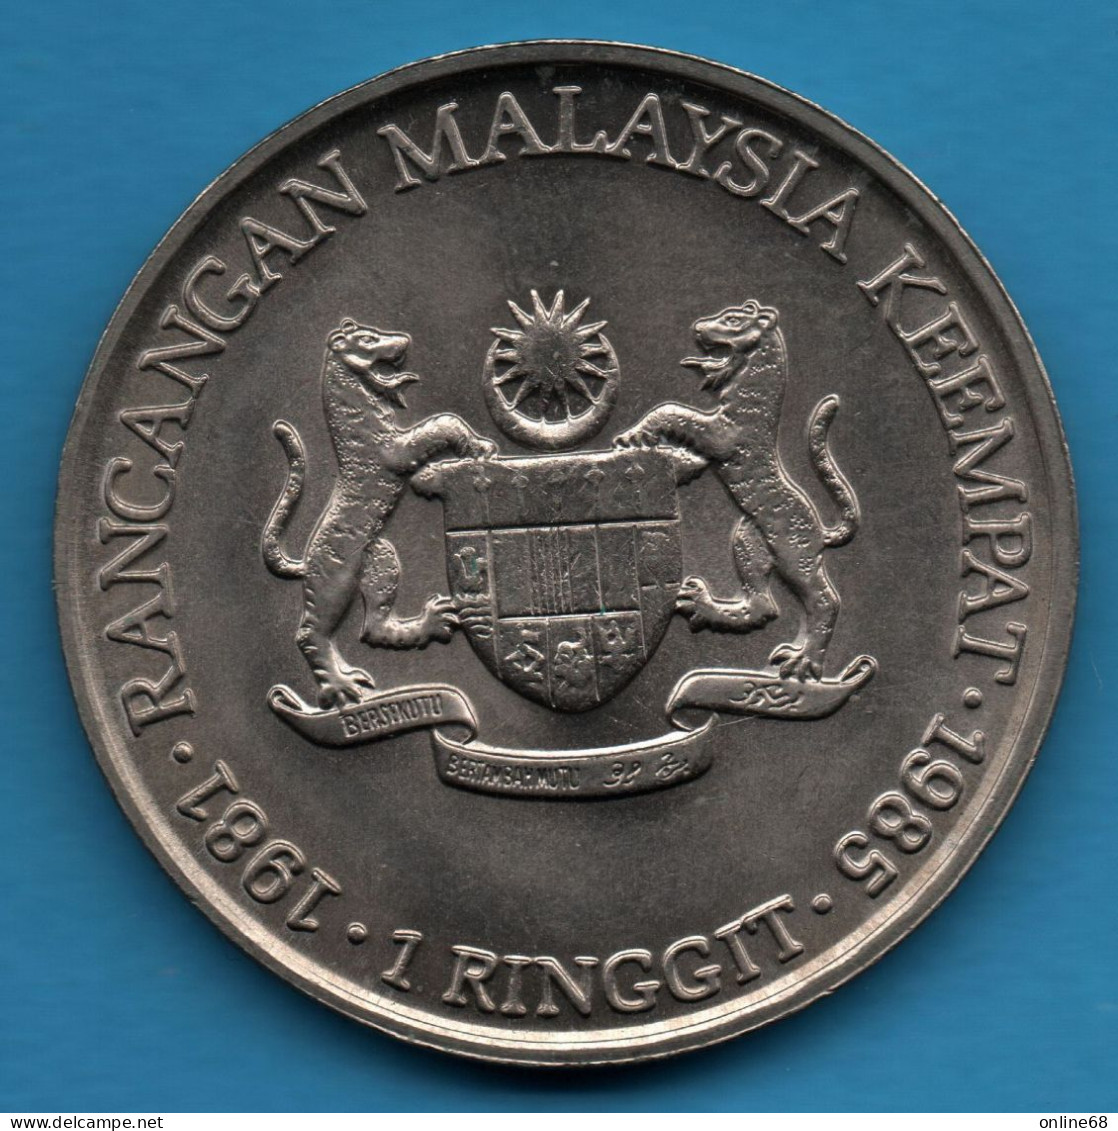 MALAYSIA 1 RINGGIT 1981 - 1985 KM# 29 4th Malaysia Plan TUN HUSSEIN ONN - Maleisië